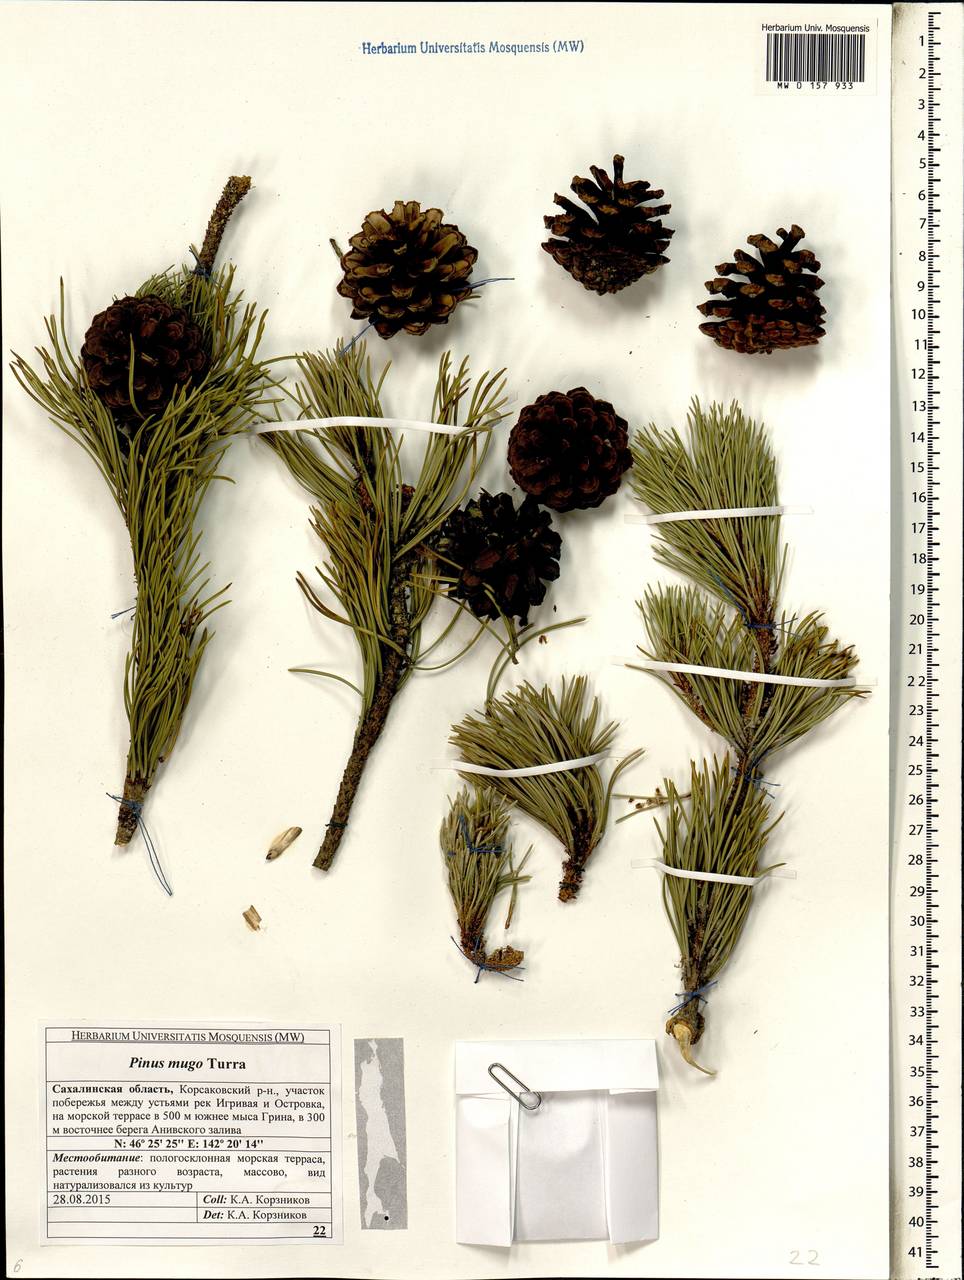 Pinus mugo Turra, Siberia, Russian Far East (S6) (Russia)